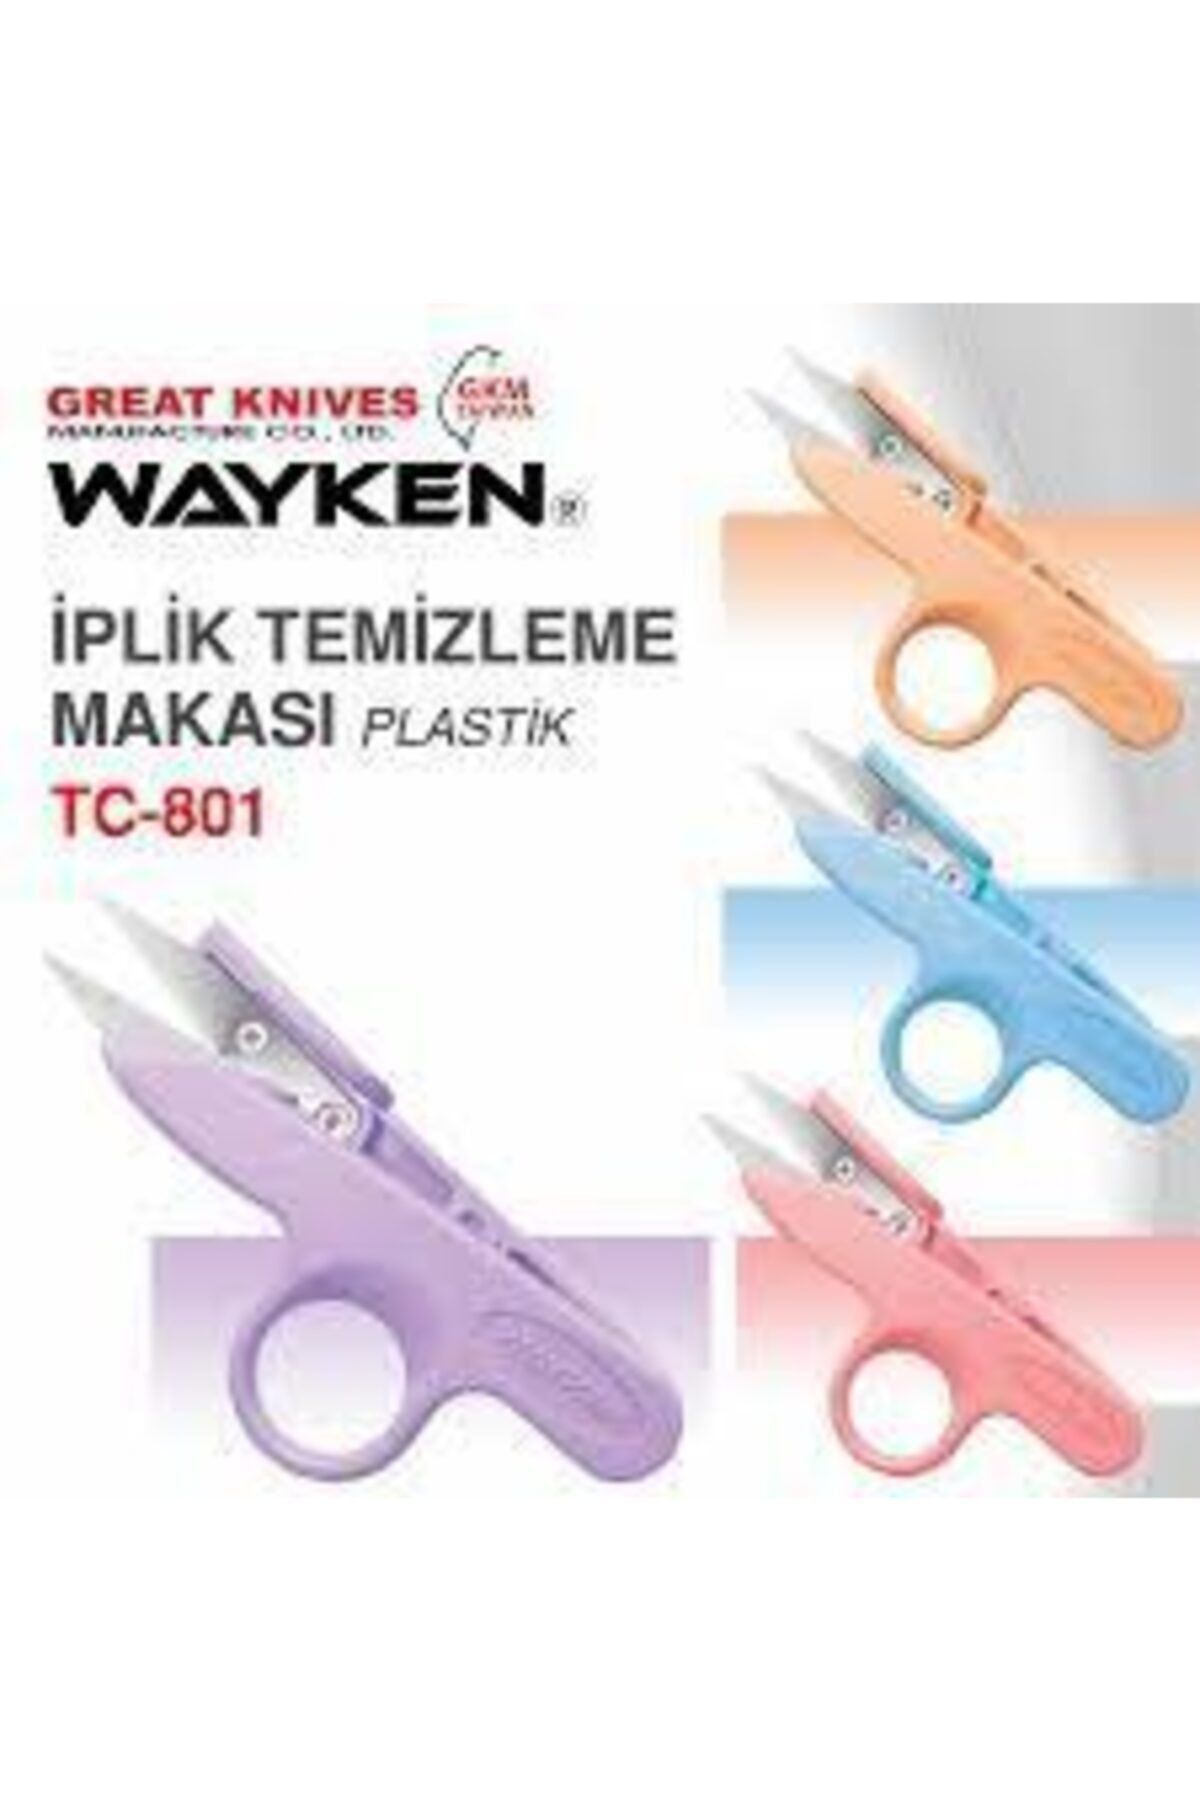 Linea Wayken Tc-801 Iplik Temizleme Makası Plastik